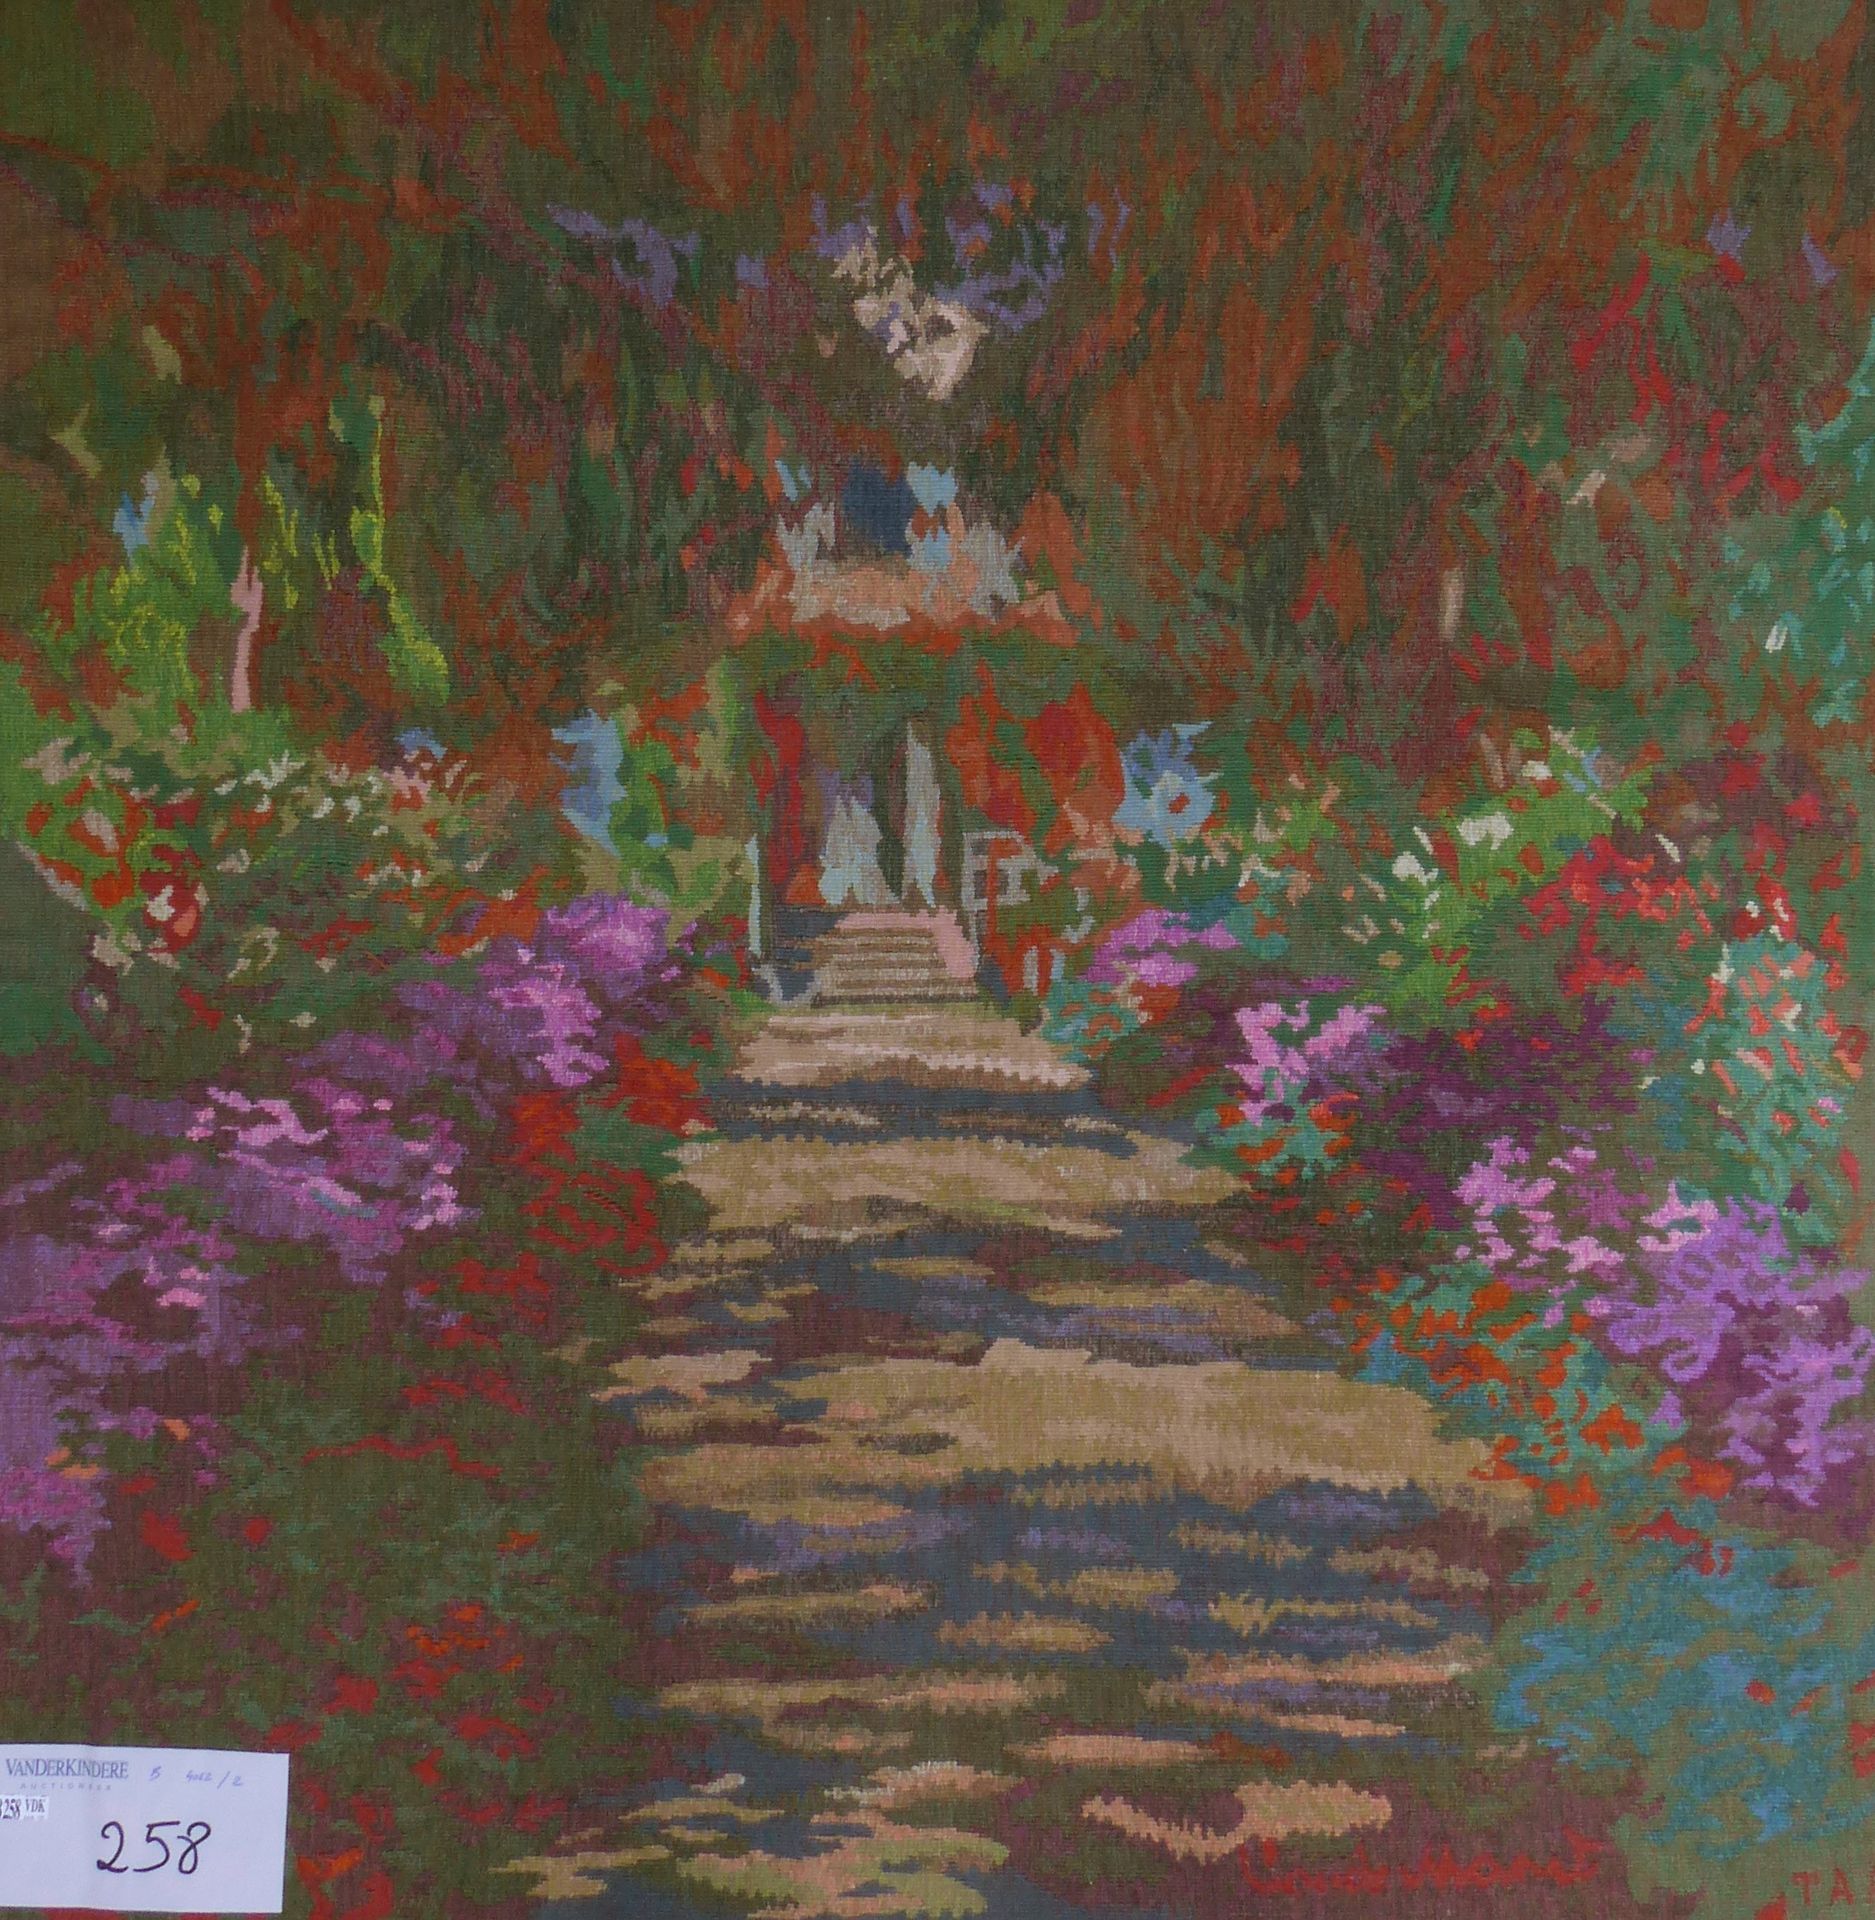 Null "Festa in giardino". Arazzo Aubusson. Dopo Monet. Dimensioni: 102x98 cm.